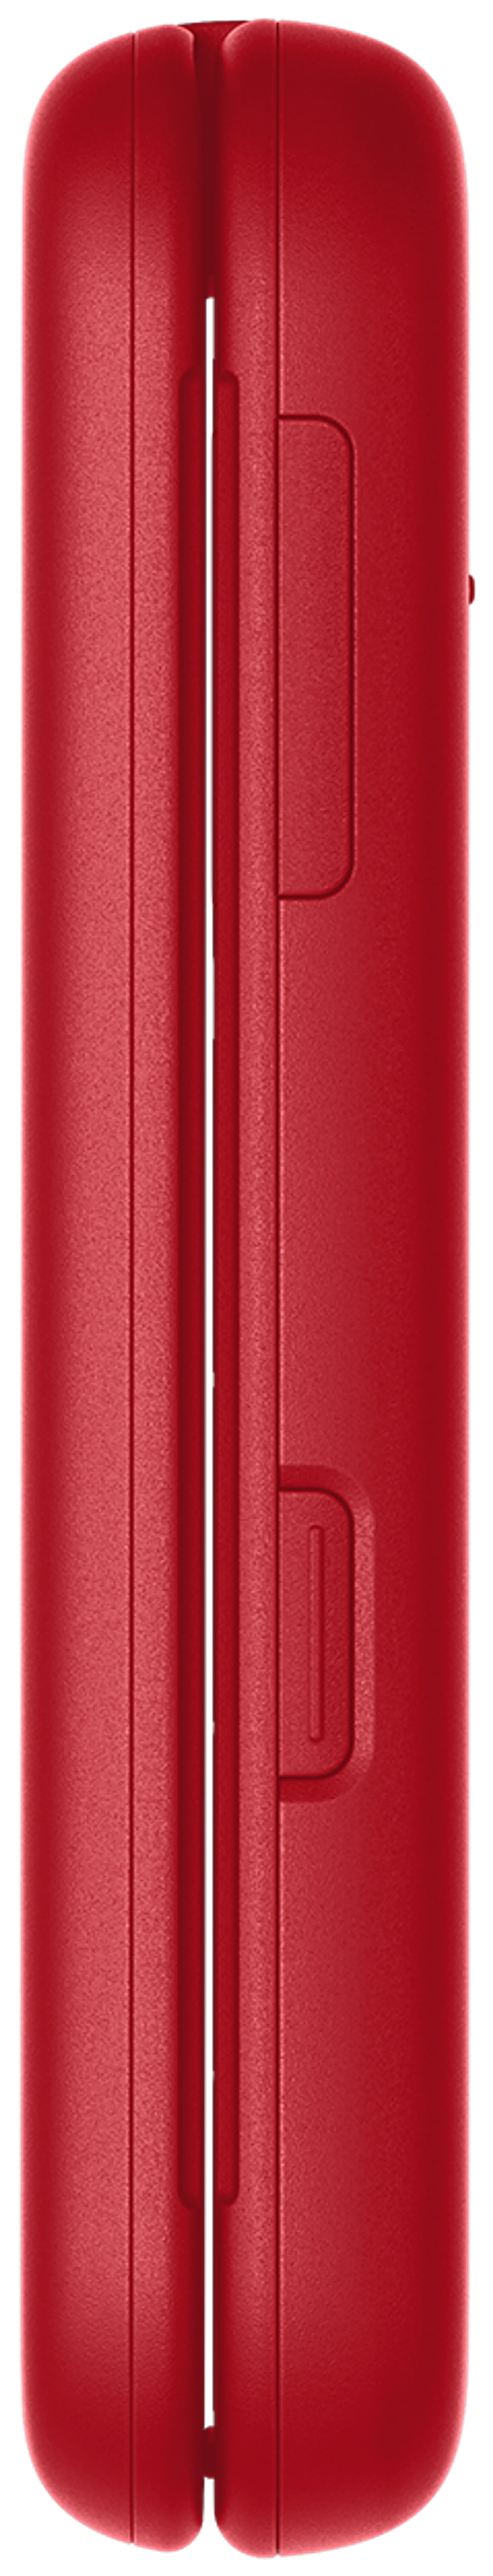 Nokia 2660 punainen peruspuhelin + teline - 3